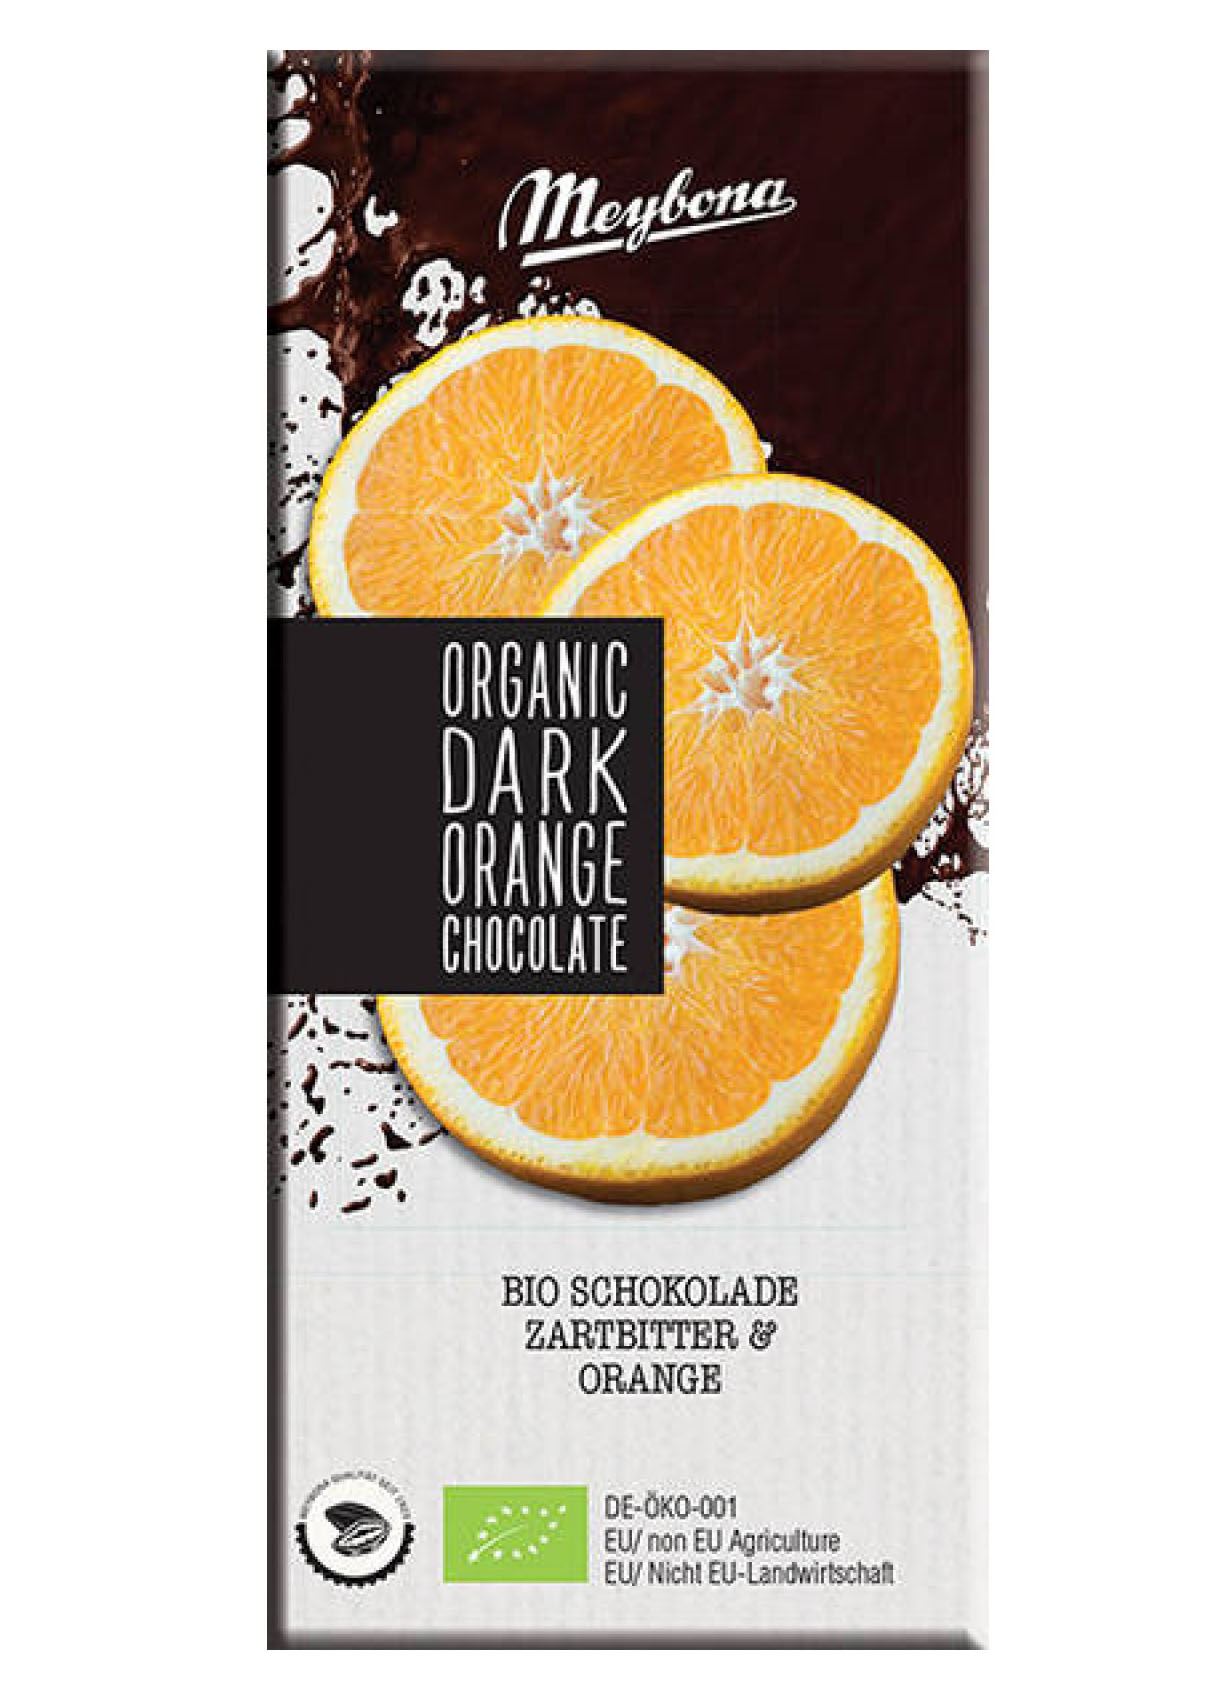 شکلات با طعم پرتقال